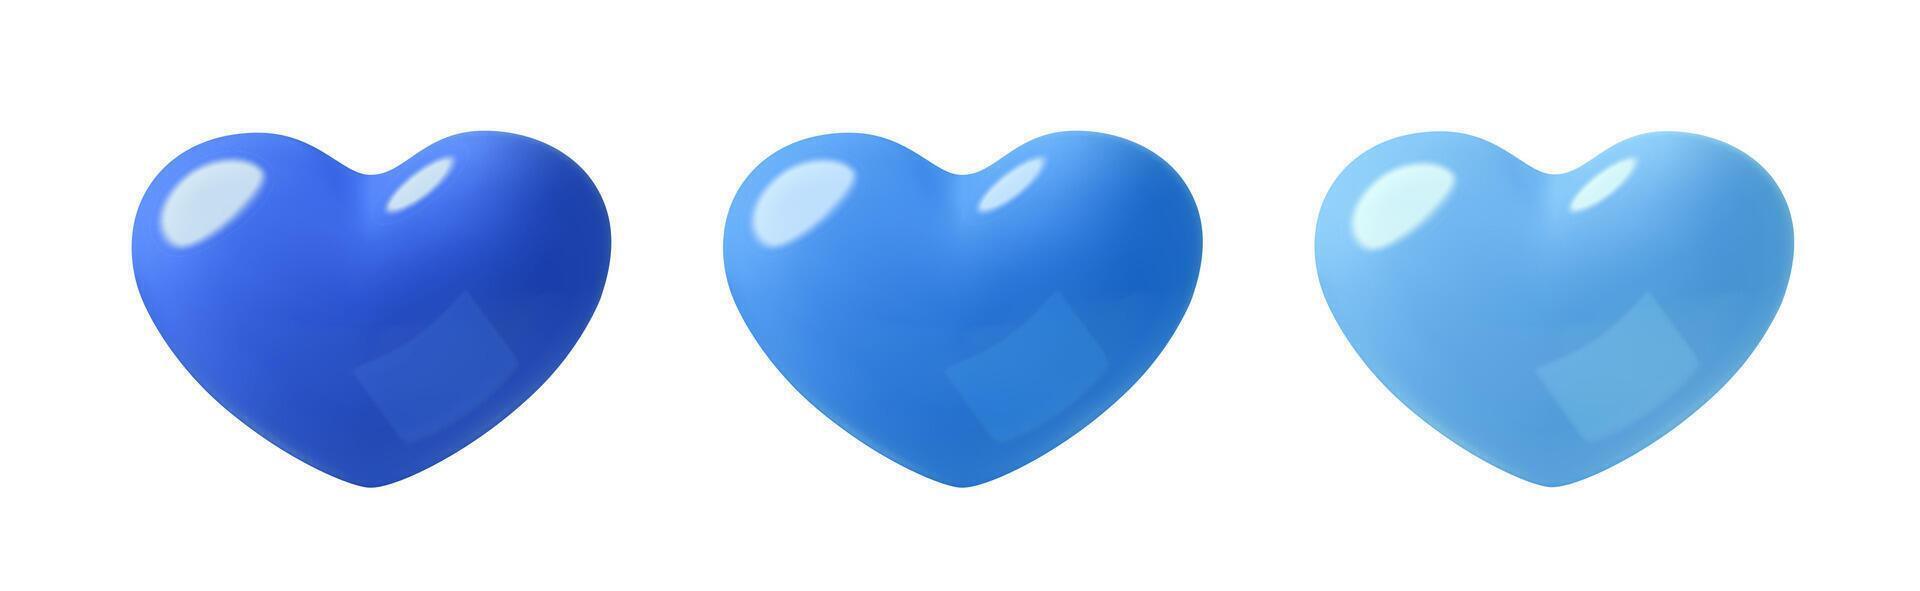 blauw harten 3d plastic elementen reeks liefde of Leuk vinden drie dimensionaal pictogrammen verzameling vector